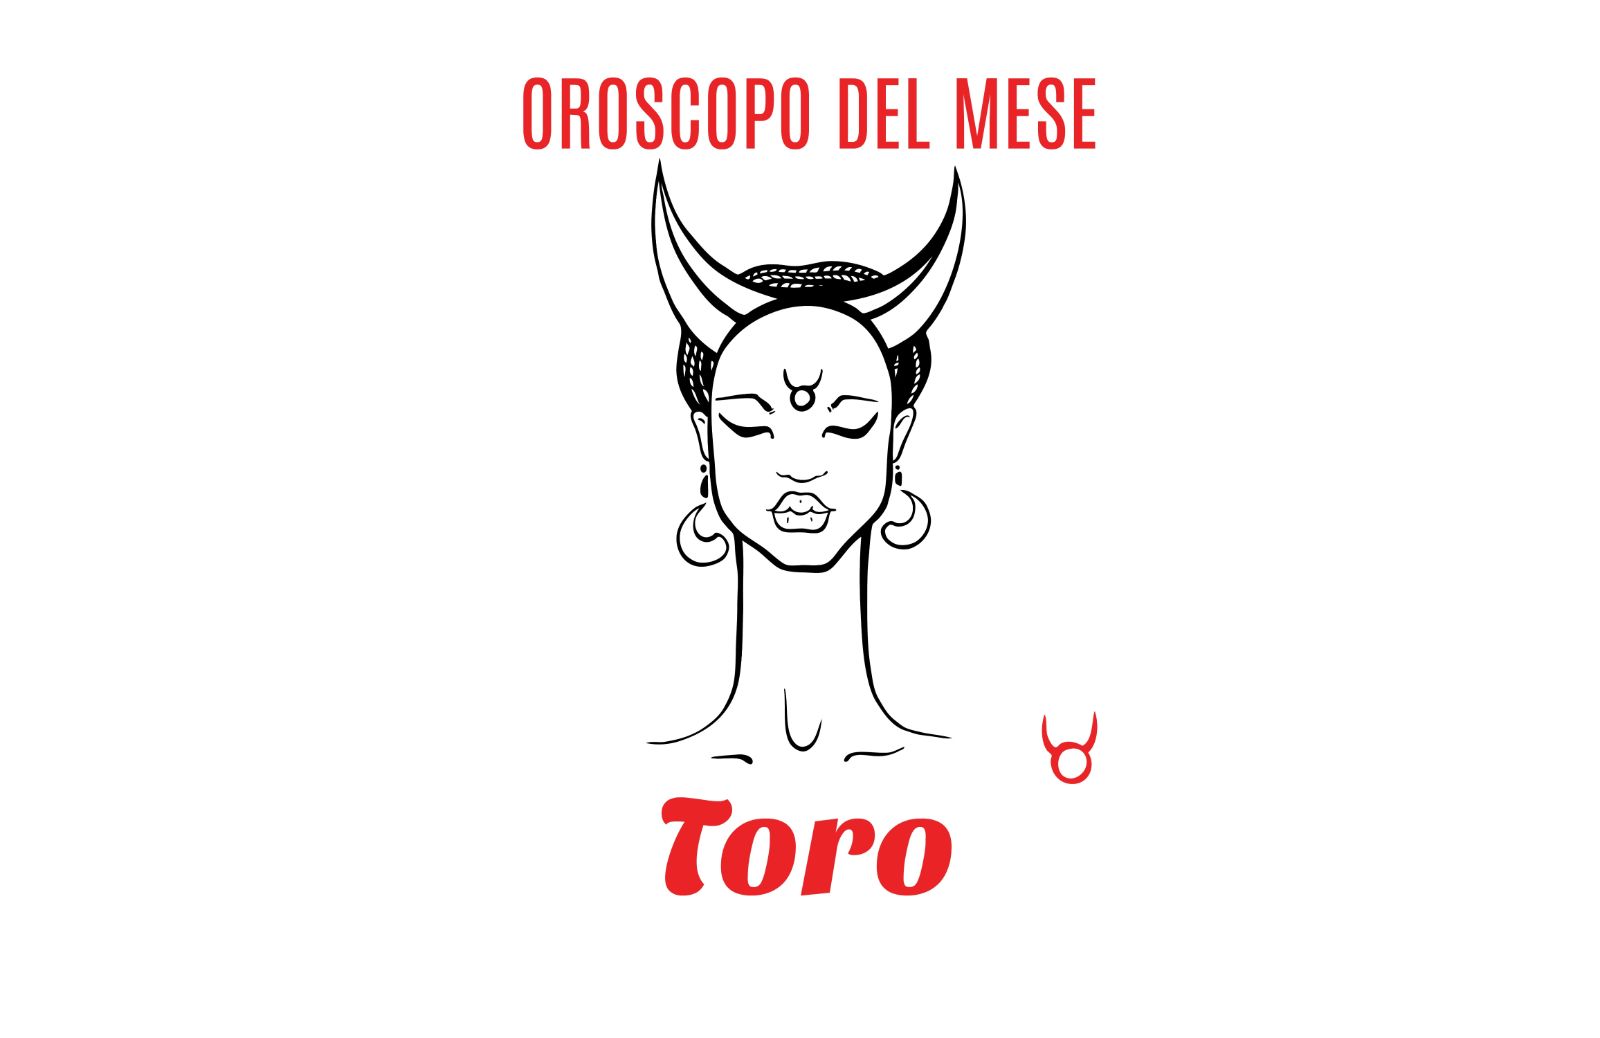 Oroscopo del mese: Toro - maggio 2019